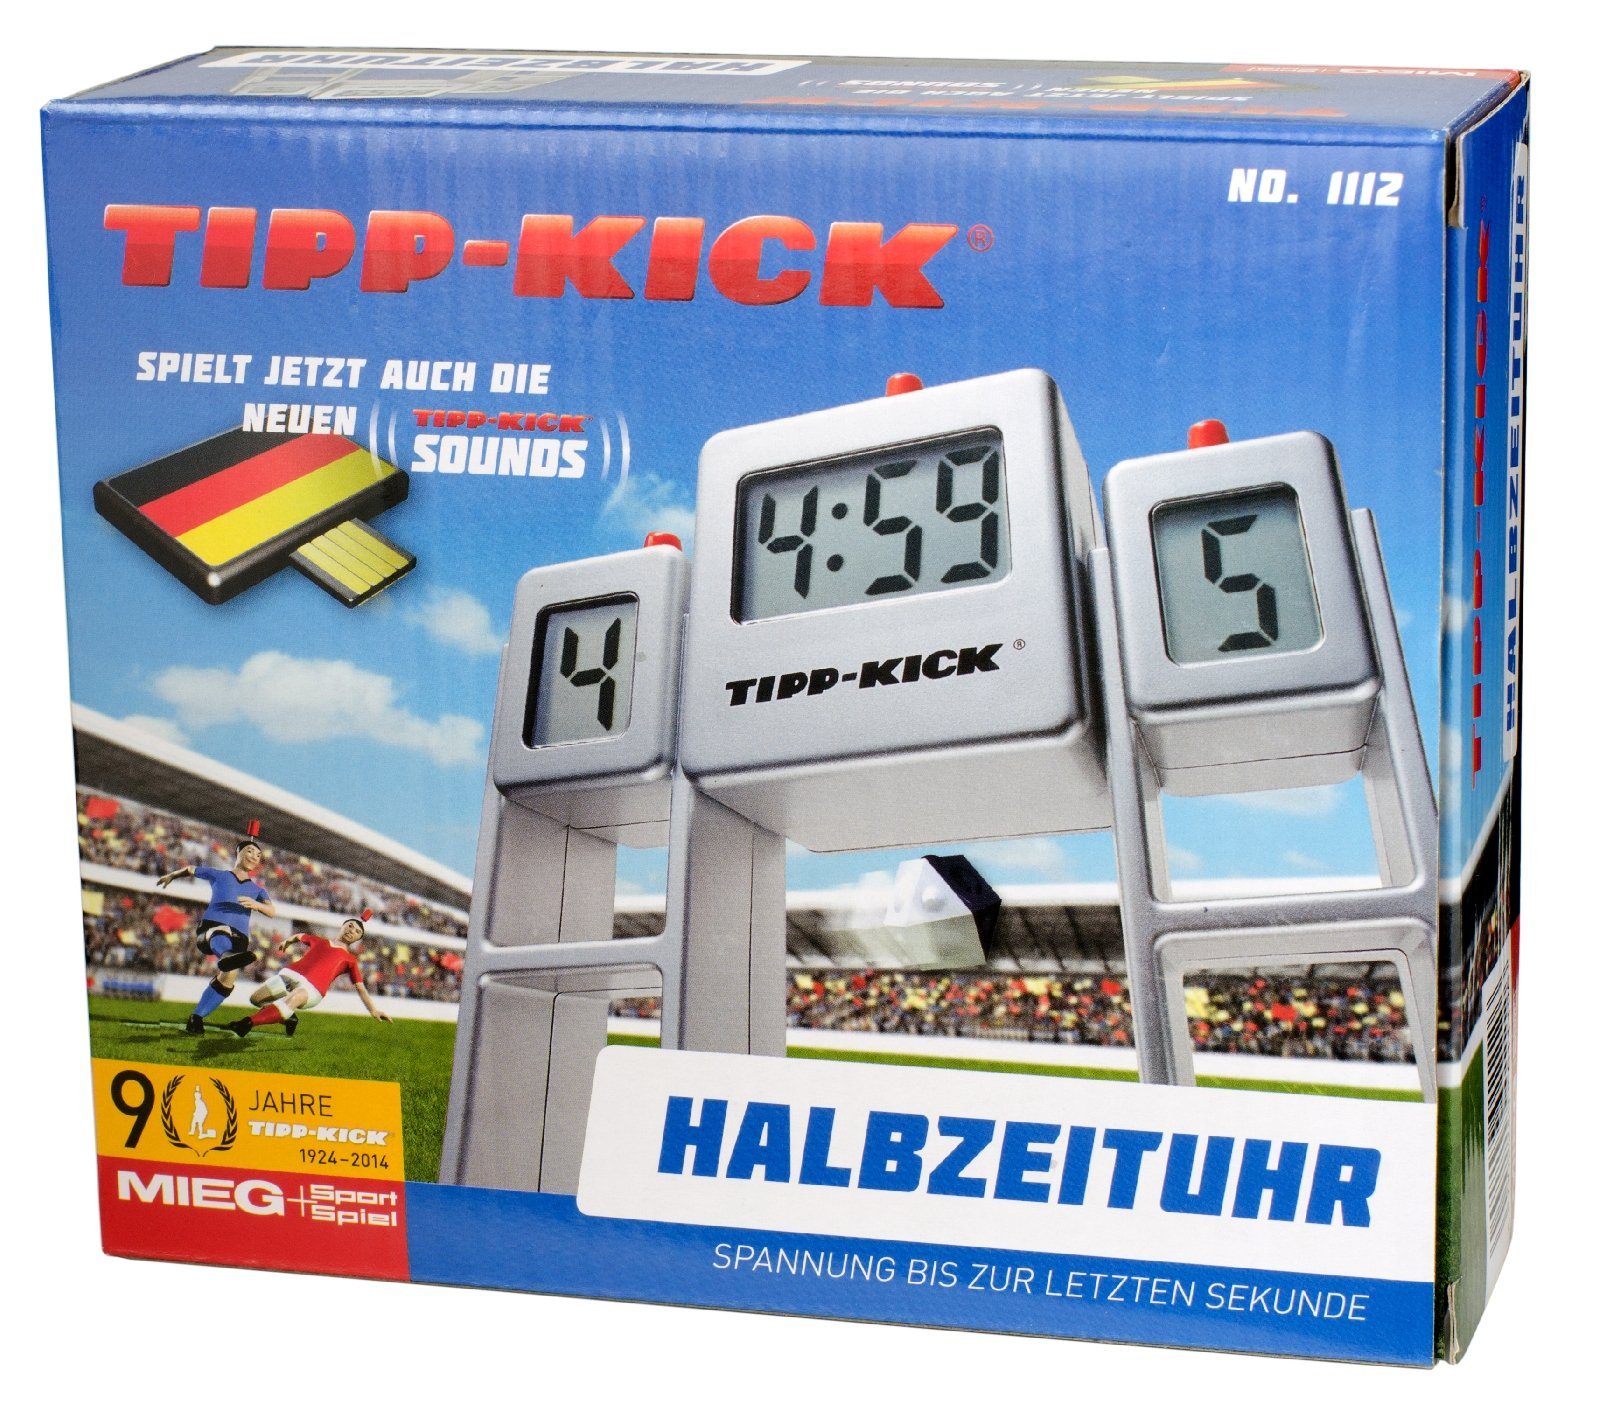 Sound Kick Zeitanzeige Tip Uhr Match Halbzeituhr Tipp-Kick Tischfußballspiel Spiel Stoppuhr